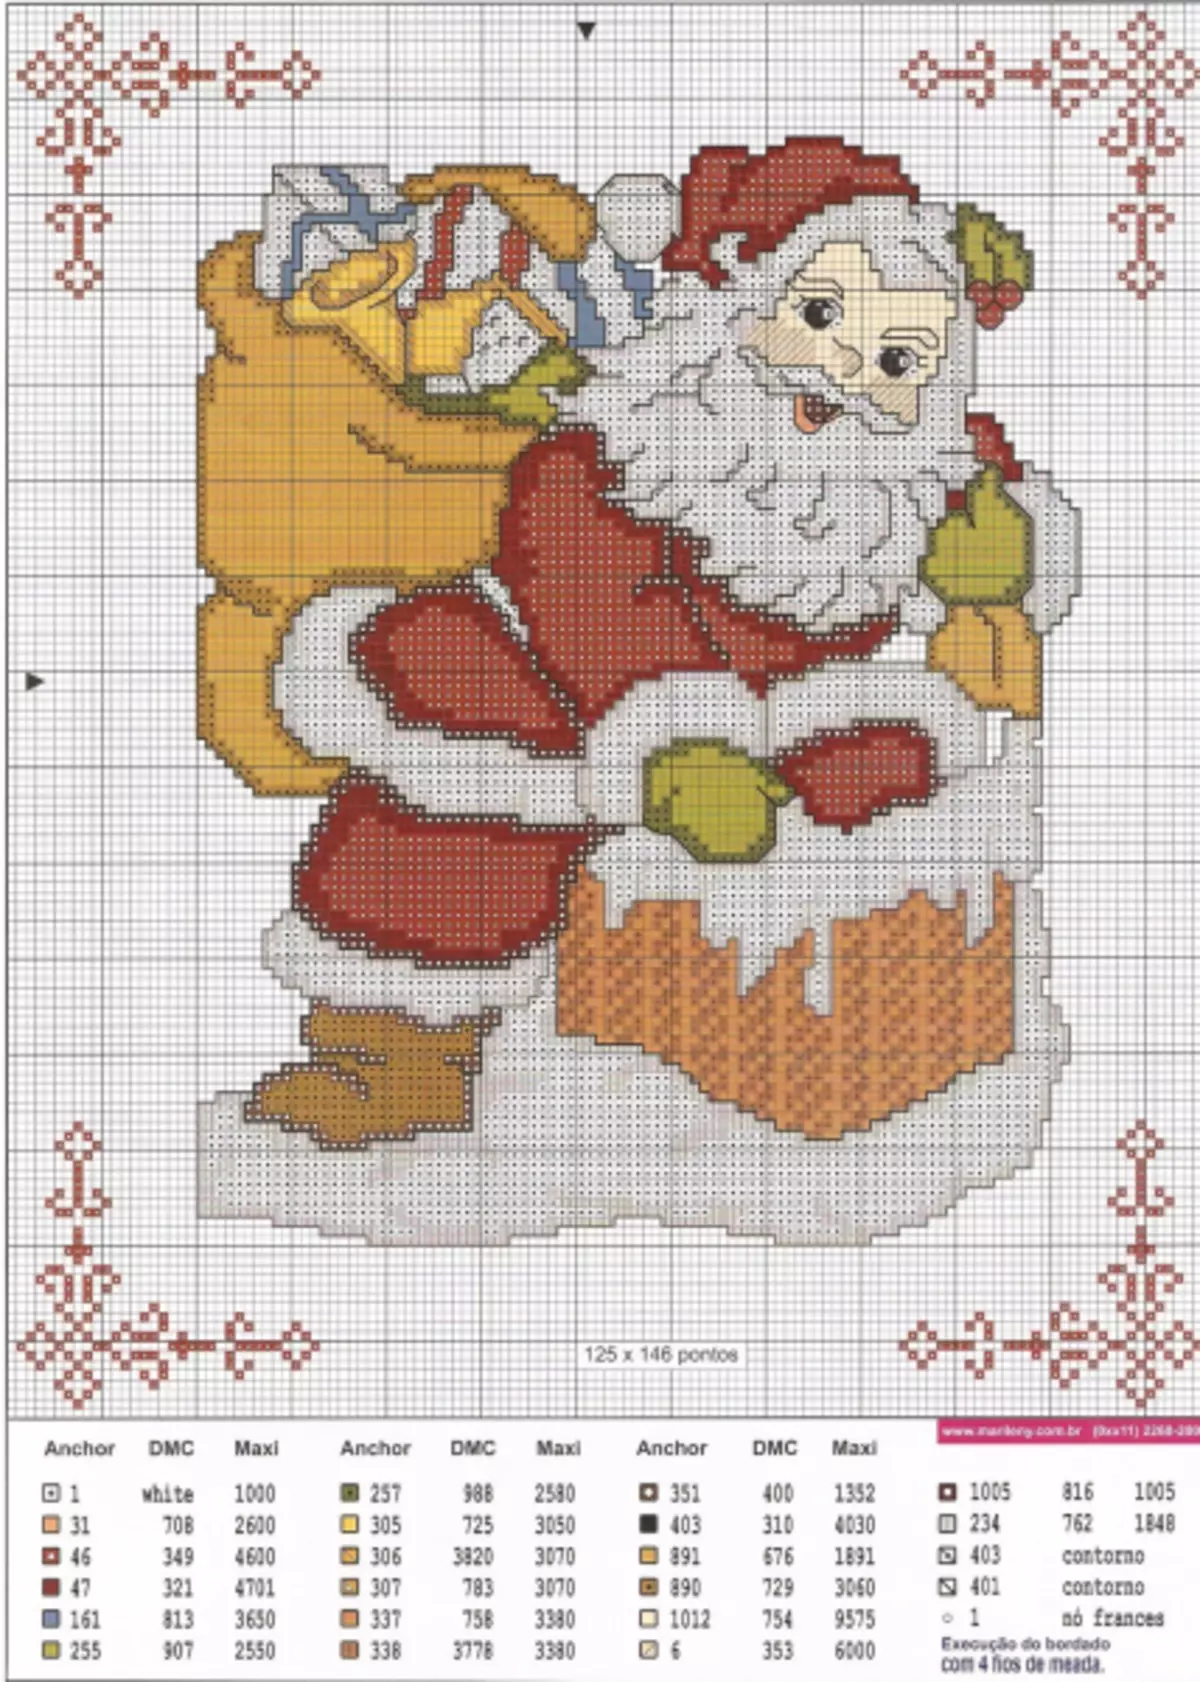 Embroidery Kersfees speelgoed met 'n kruis-borduurskema vir die nuwe jaar